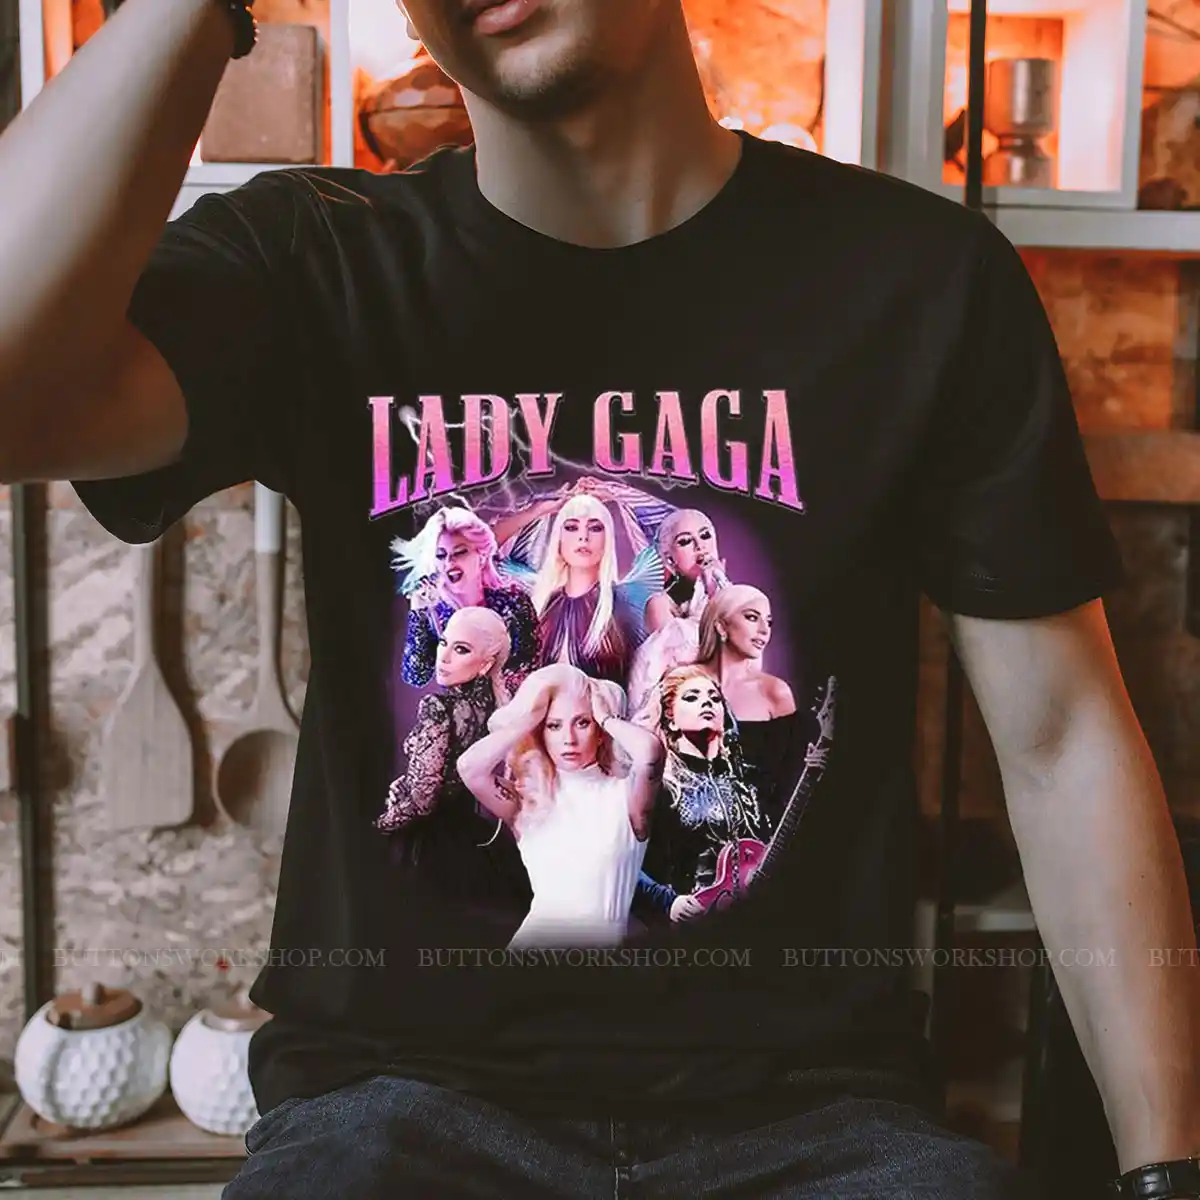 Lady Gaga Metal Shirt Unisex Tshirt